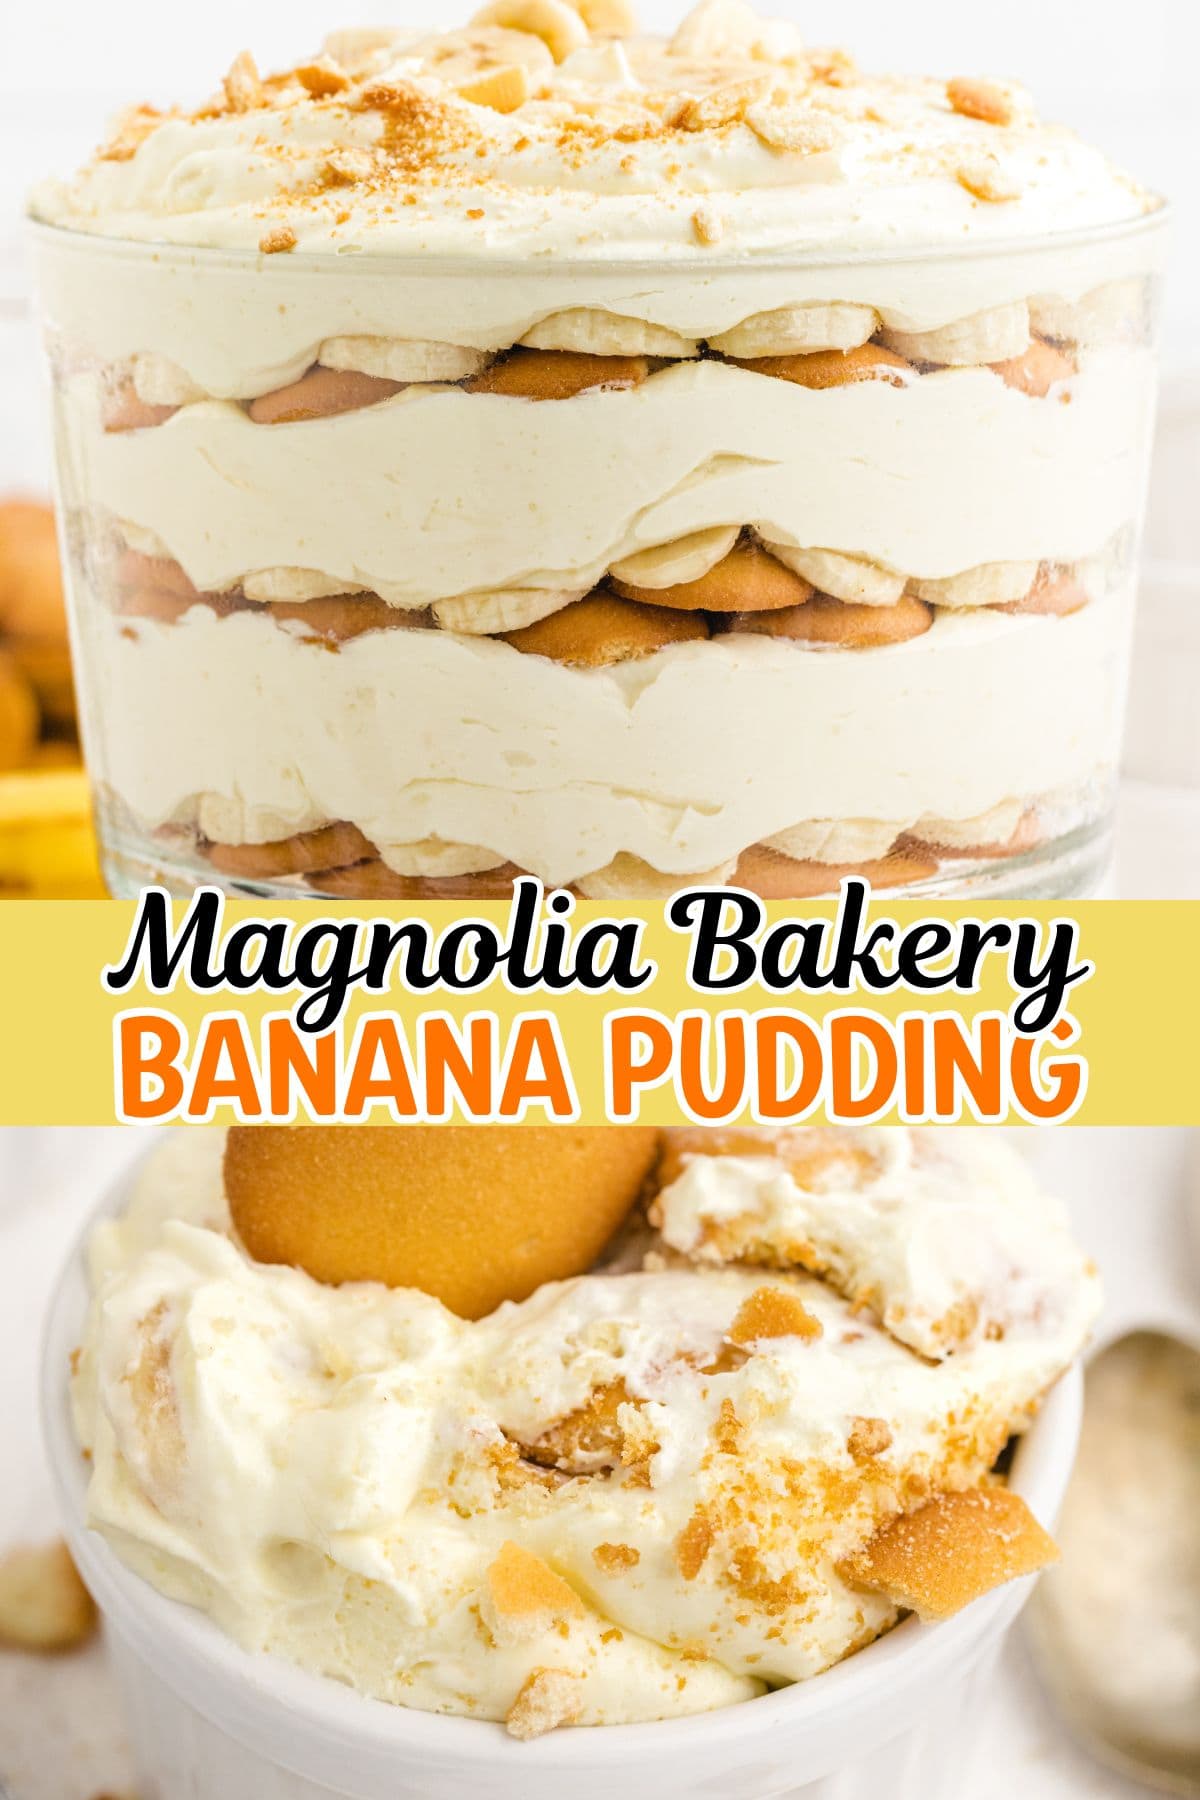 magnolia bakery banana pudding pin.